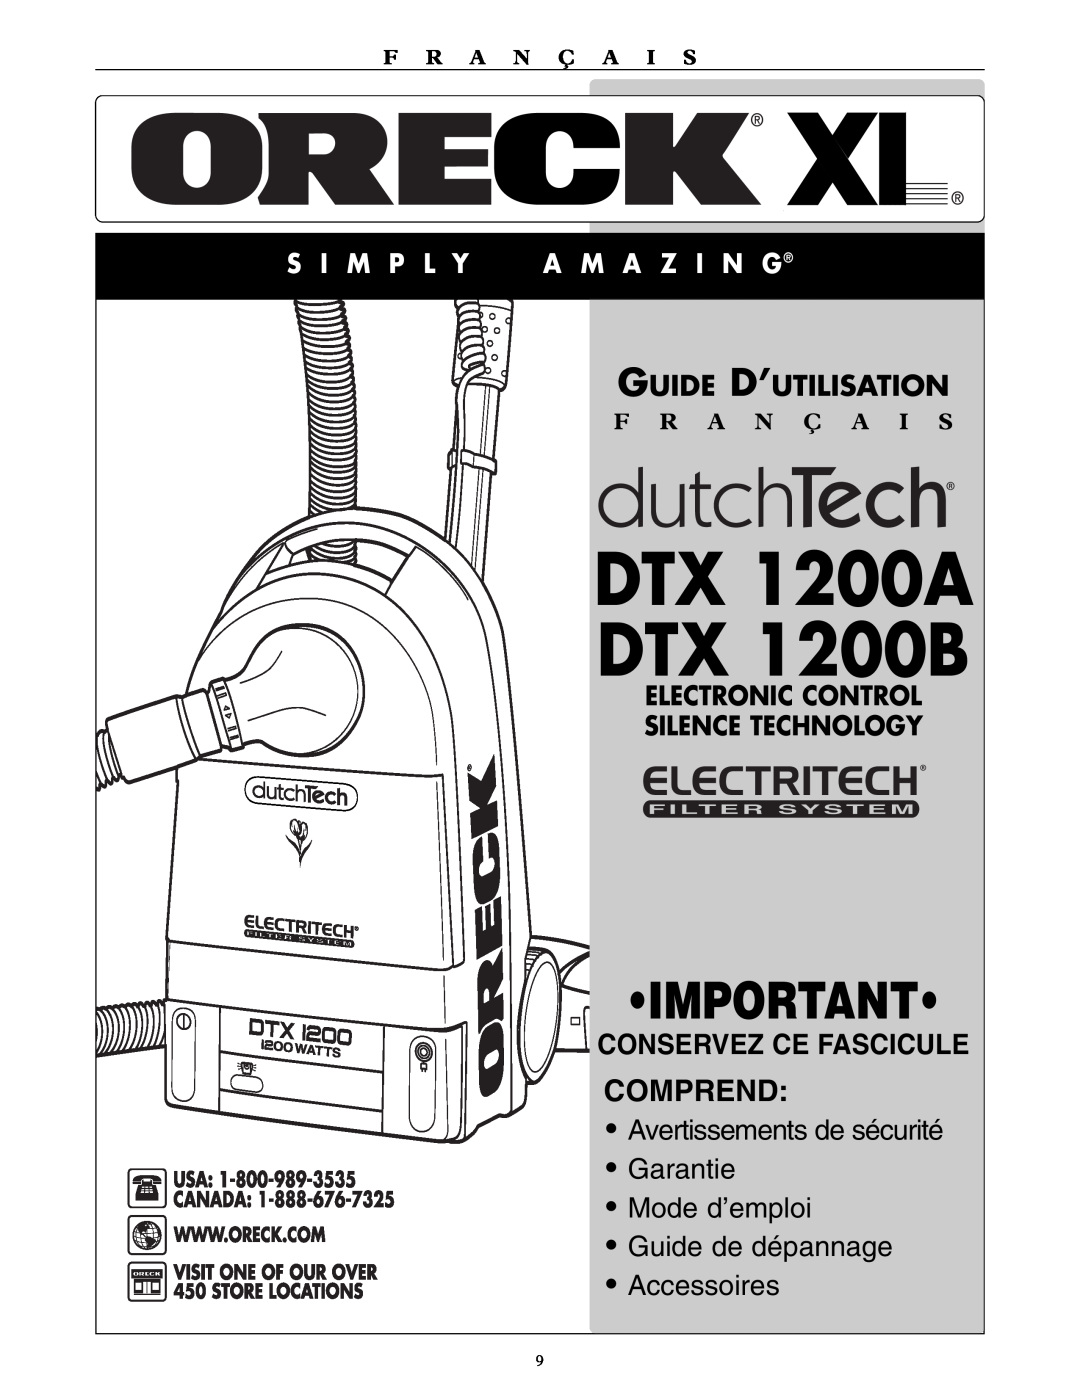 Oreck DTX 1200A DTX 1200B, Comprend, Avertissements de sécurité Garantie, Mode d’emploi Guide de dépannage, Accessoires 